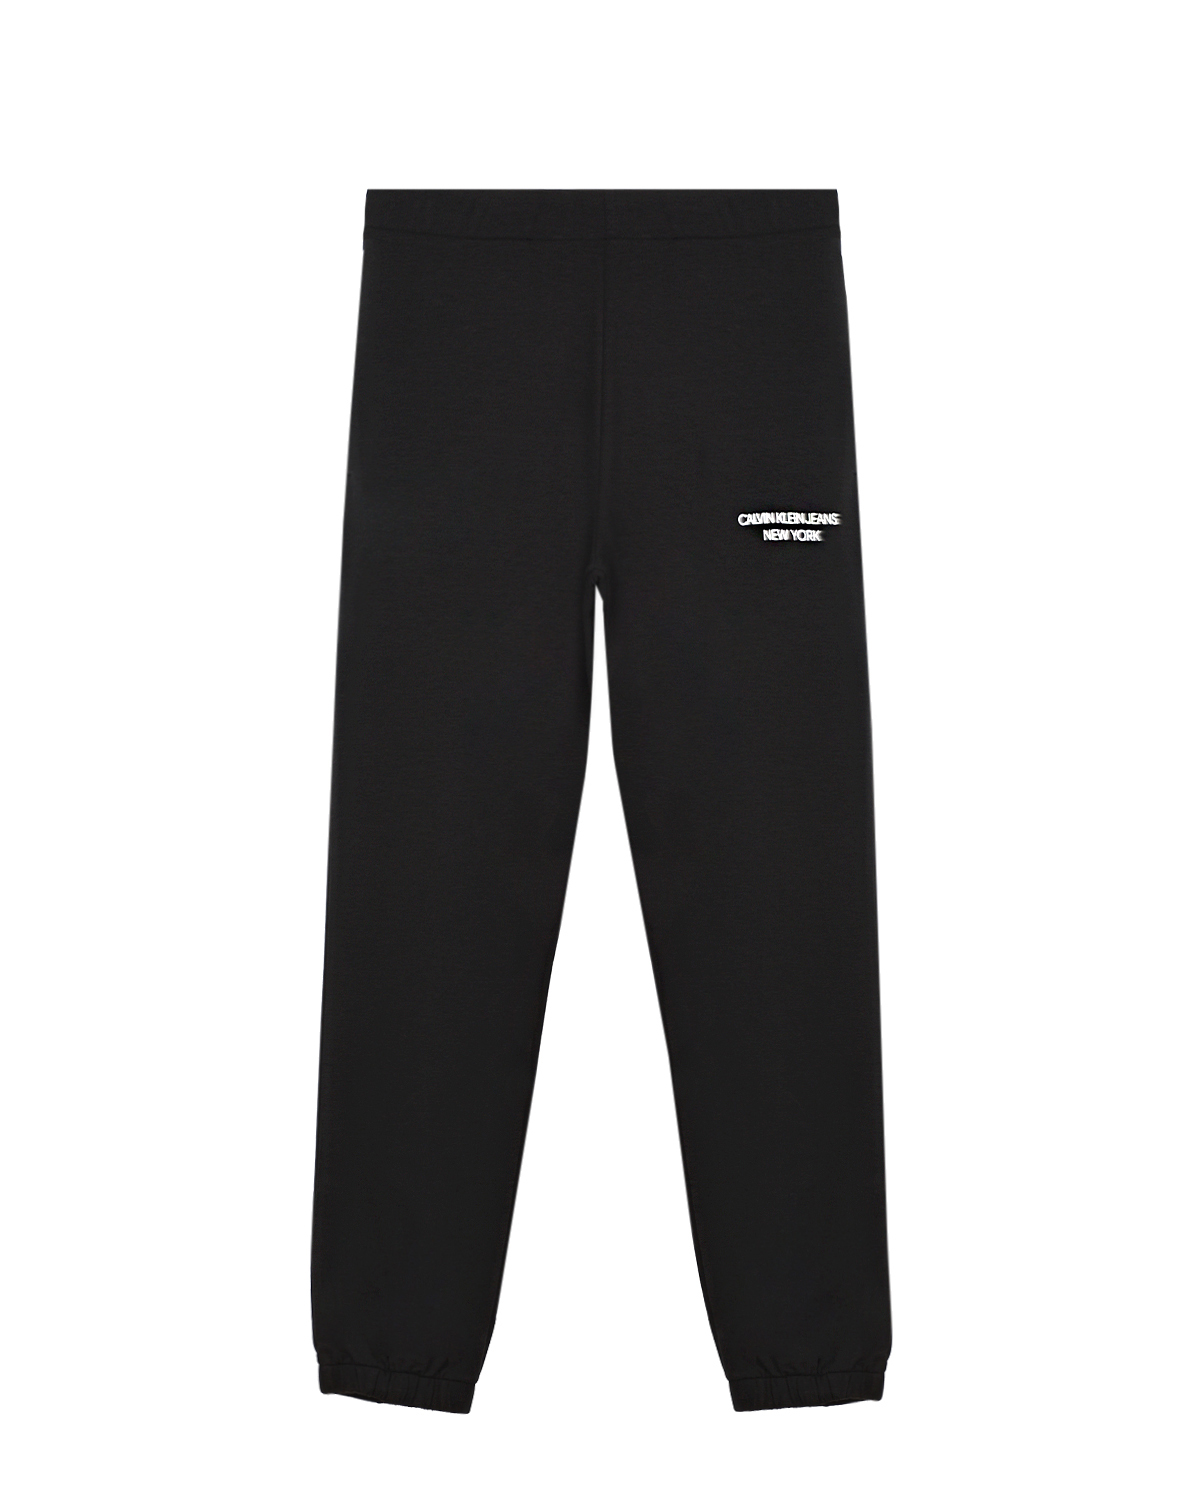 Черные спортивные брюки Calvin Klein детские, размер 152, цвет черный - фото 1